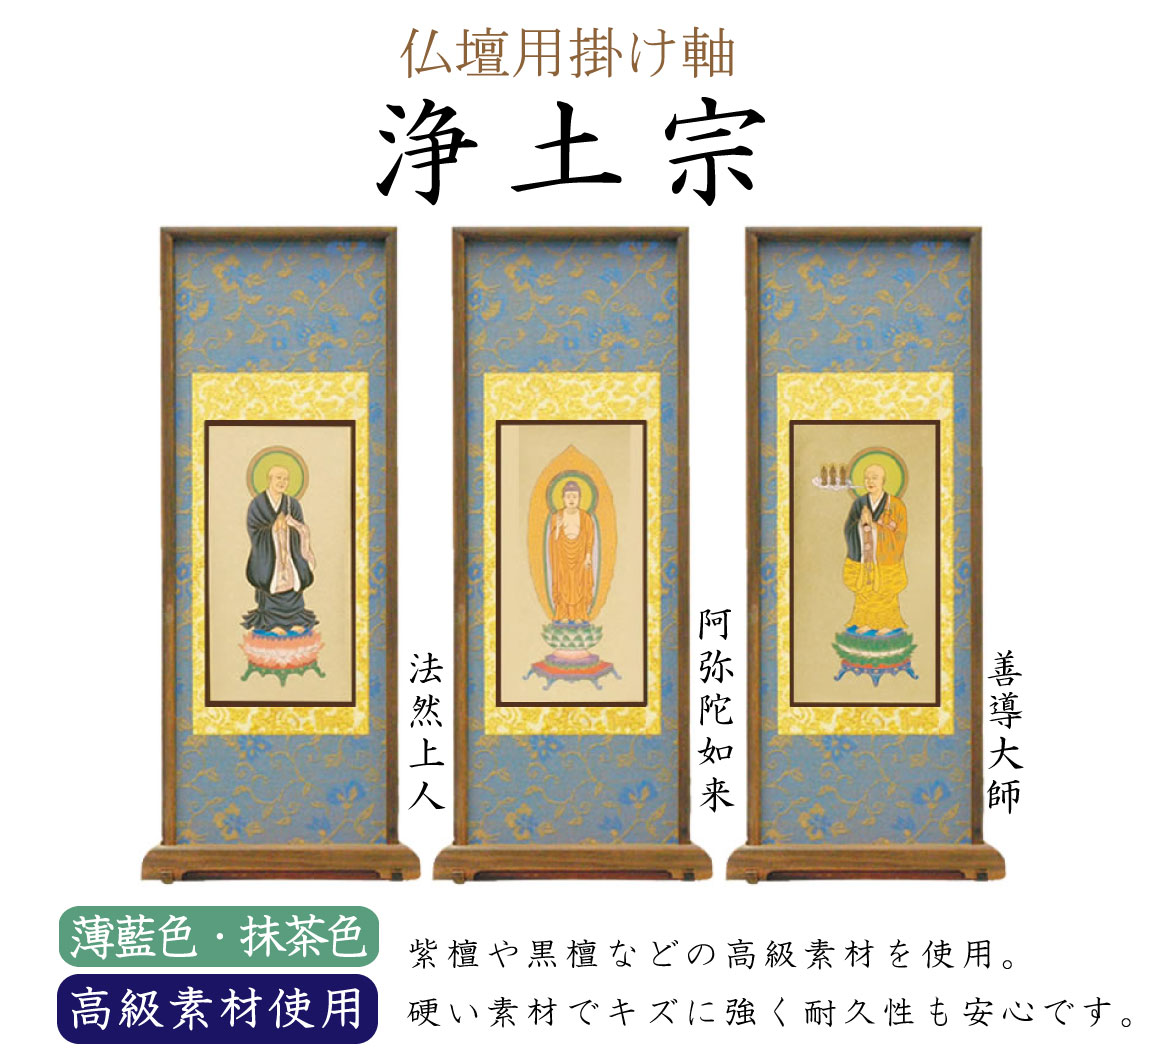 【高級素材】浄土宗の仏壇用スタンド掛け軸。中央（ご本尊）には阿弥陀如来、向かって右には善導大師、左には法然上人がかかります。高級素材の紫檀や黒檀が使用されています。